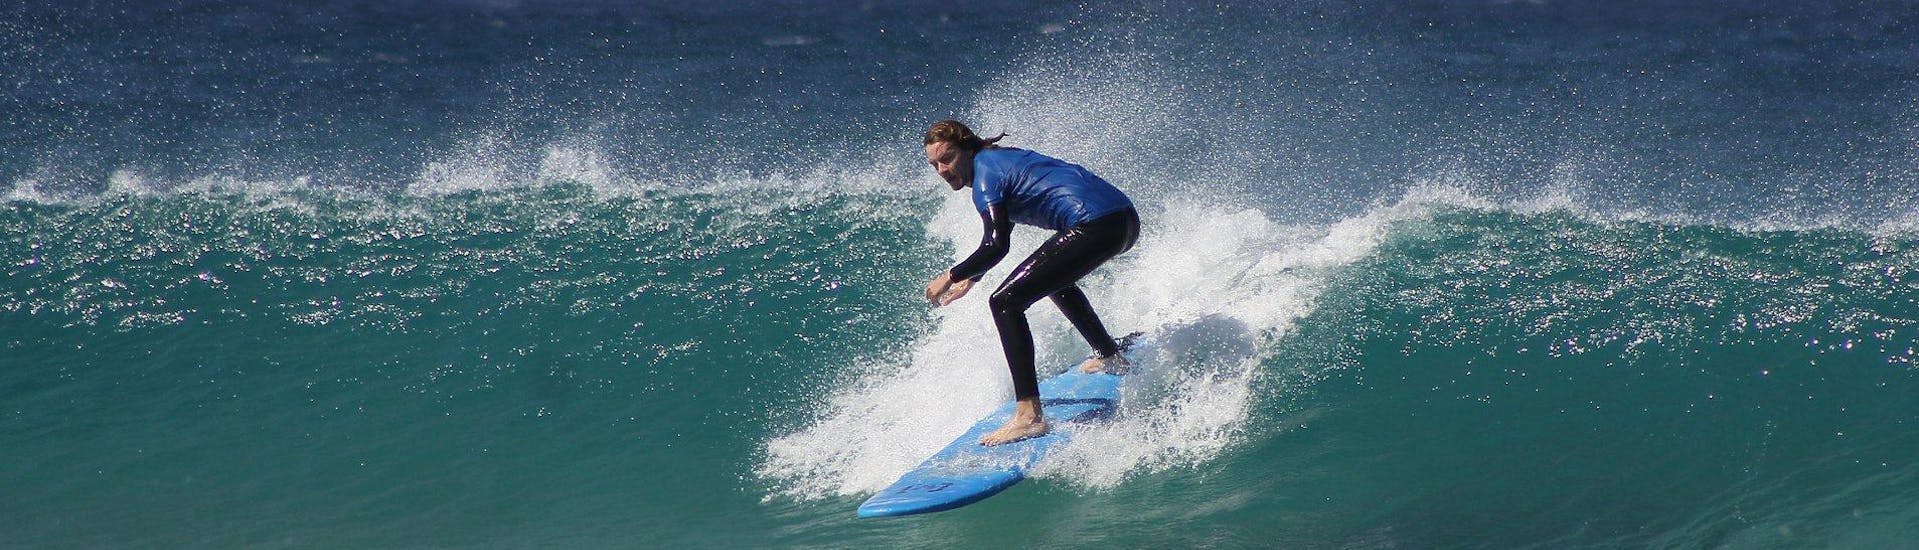 Lezioni di surf da 6 anni per surfisti avanzati.